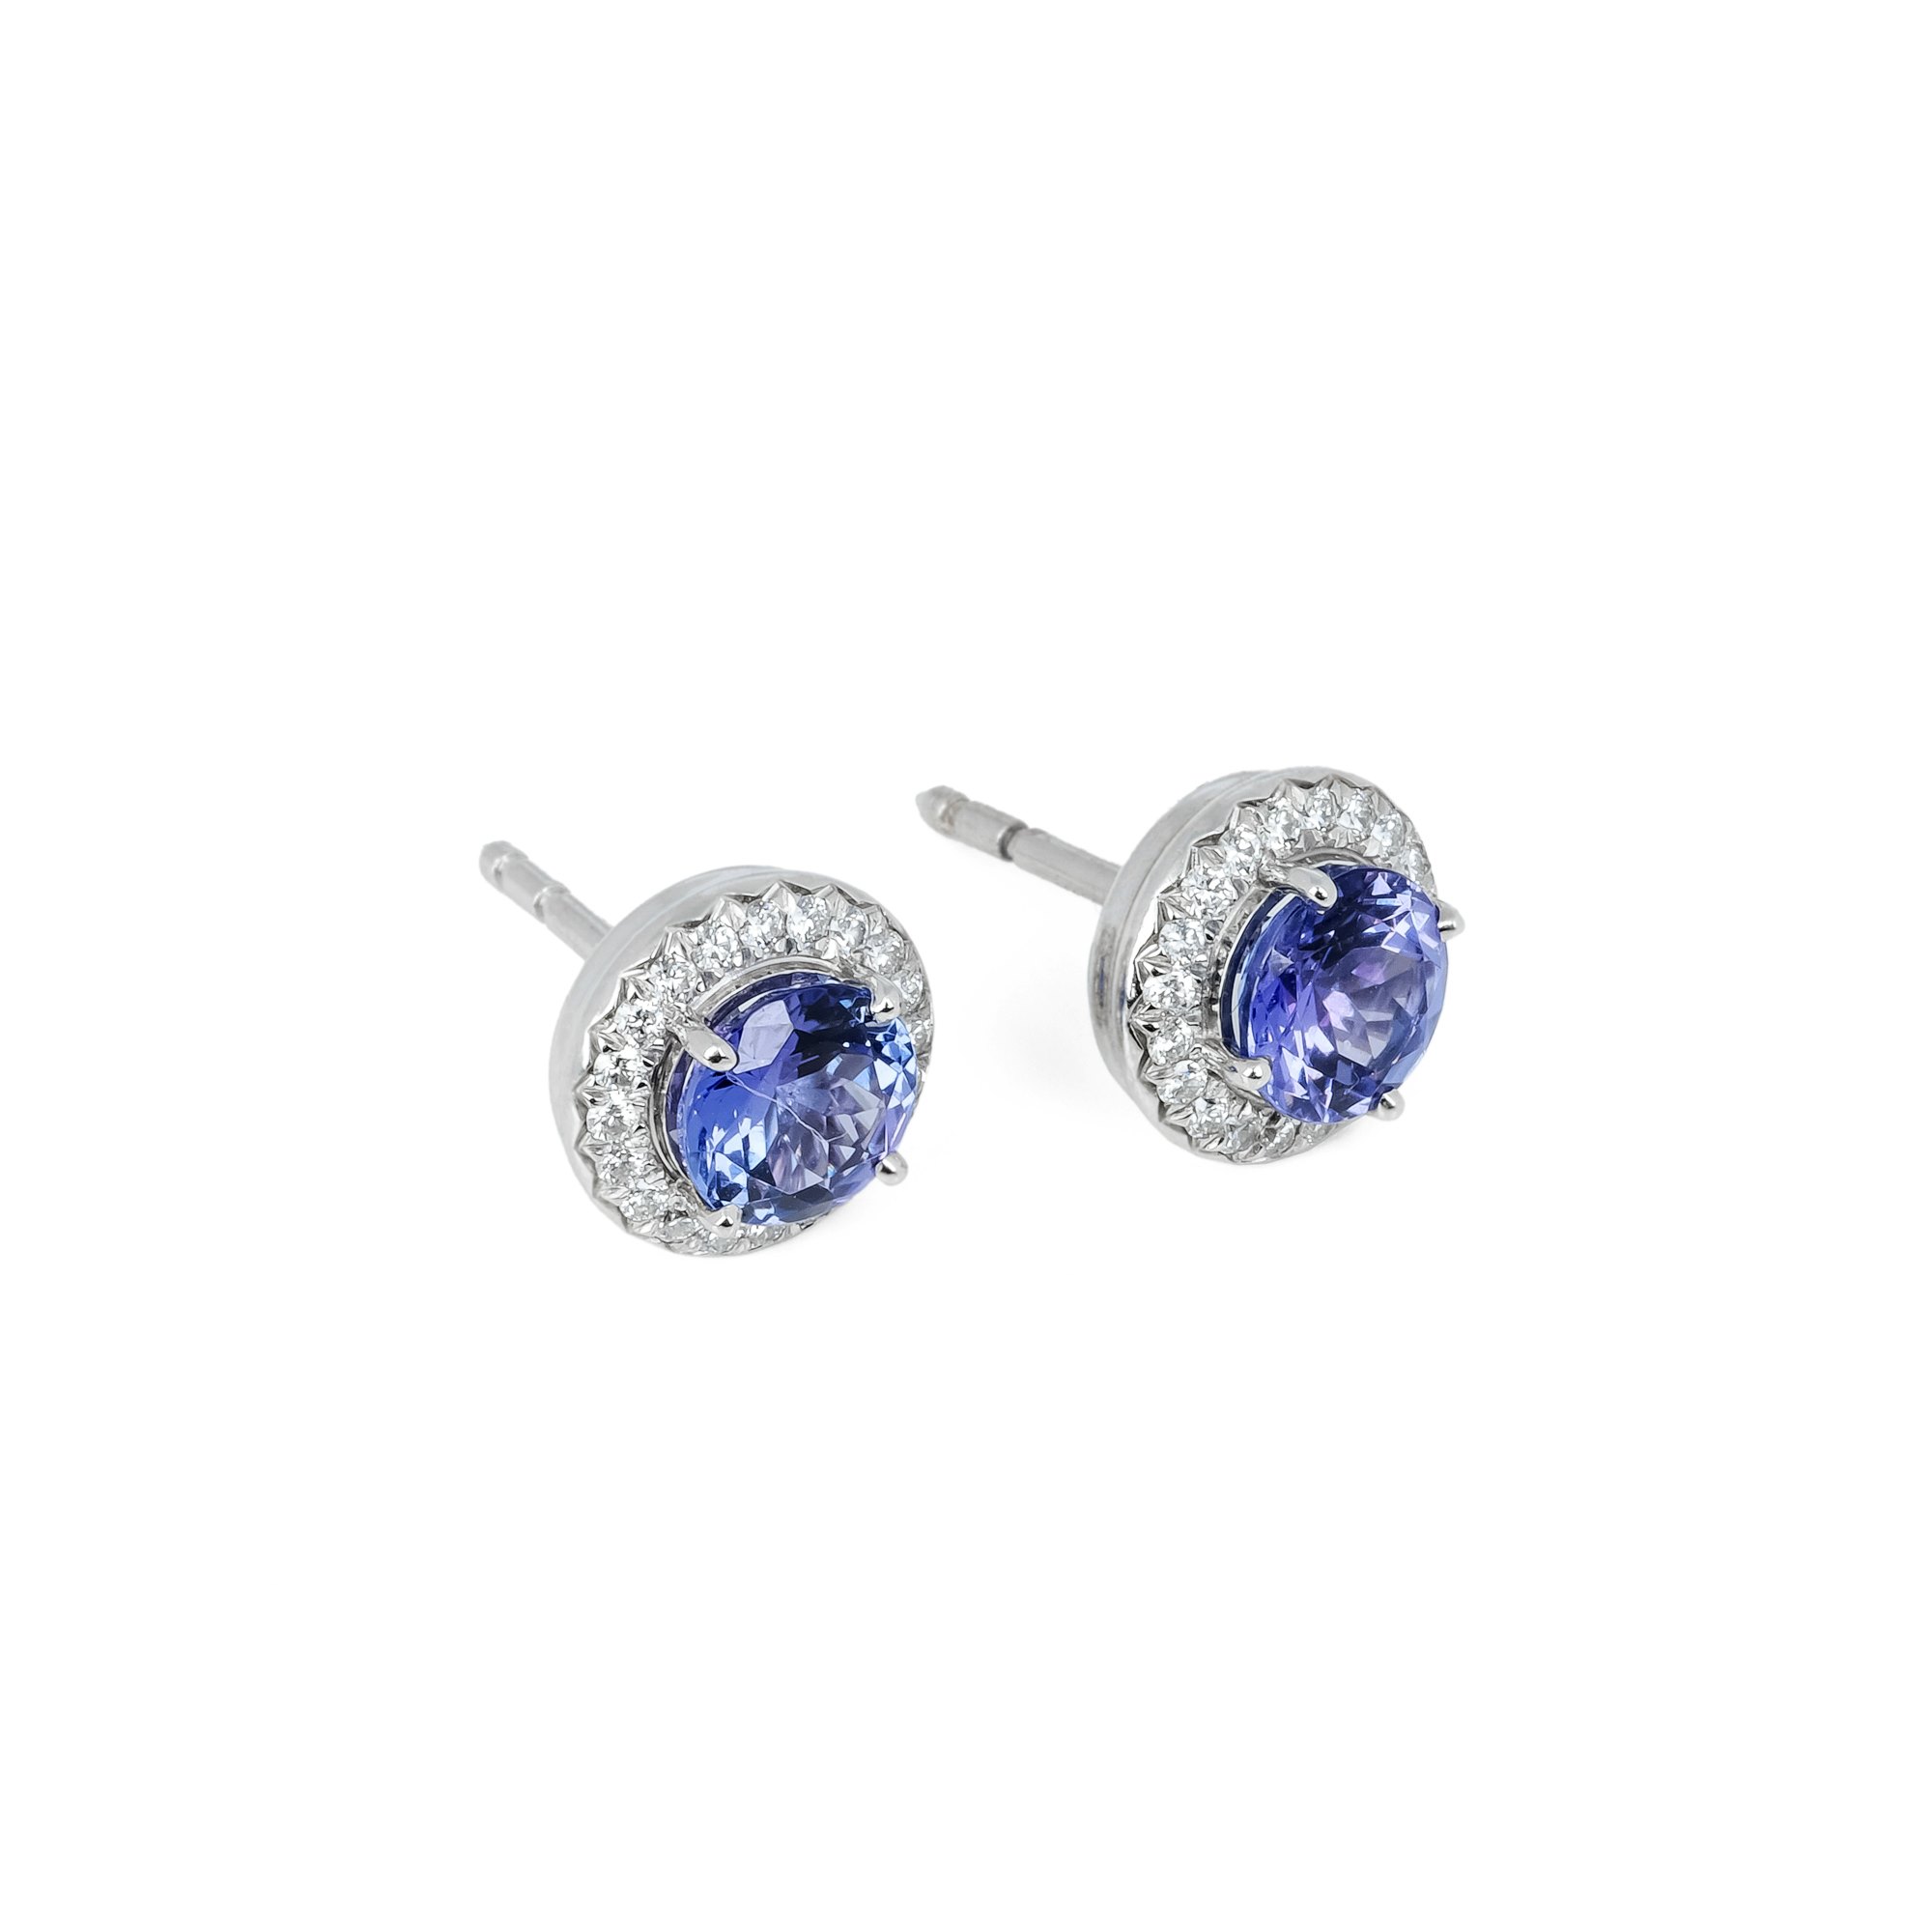 Tiffany & Co. Soleste Tanzanite Earrings